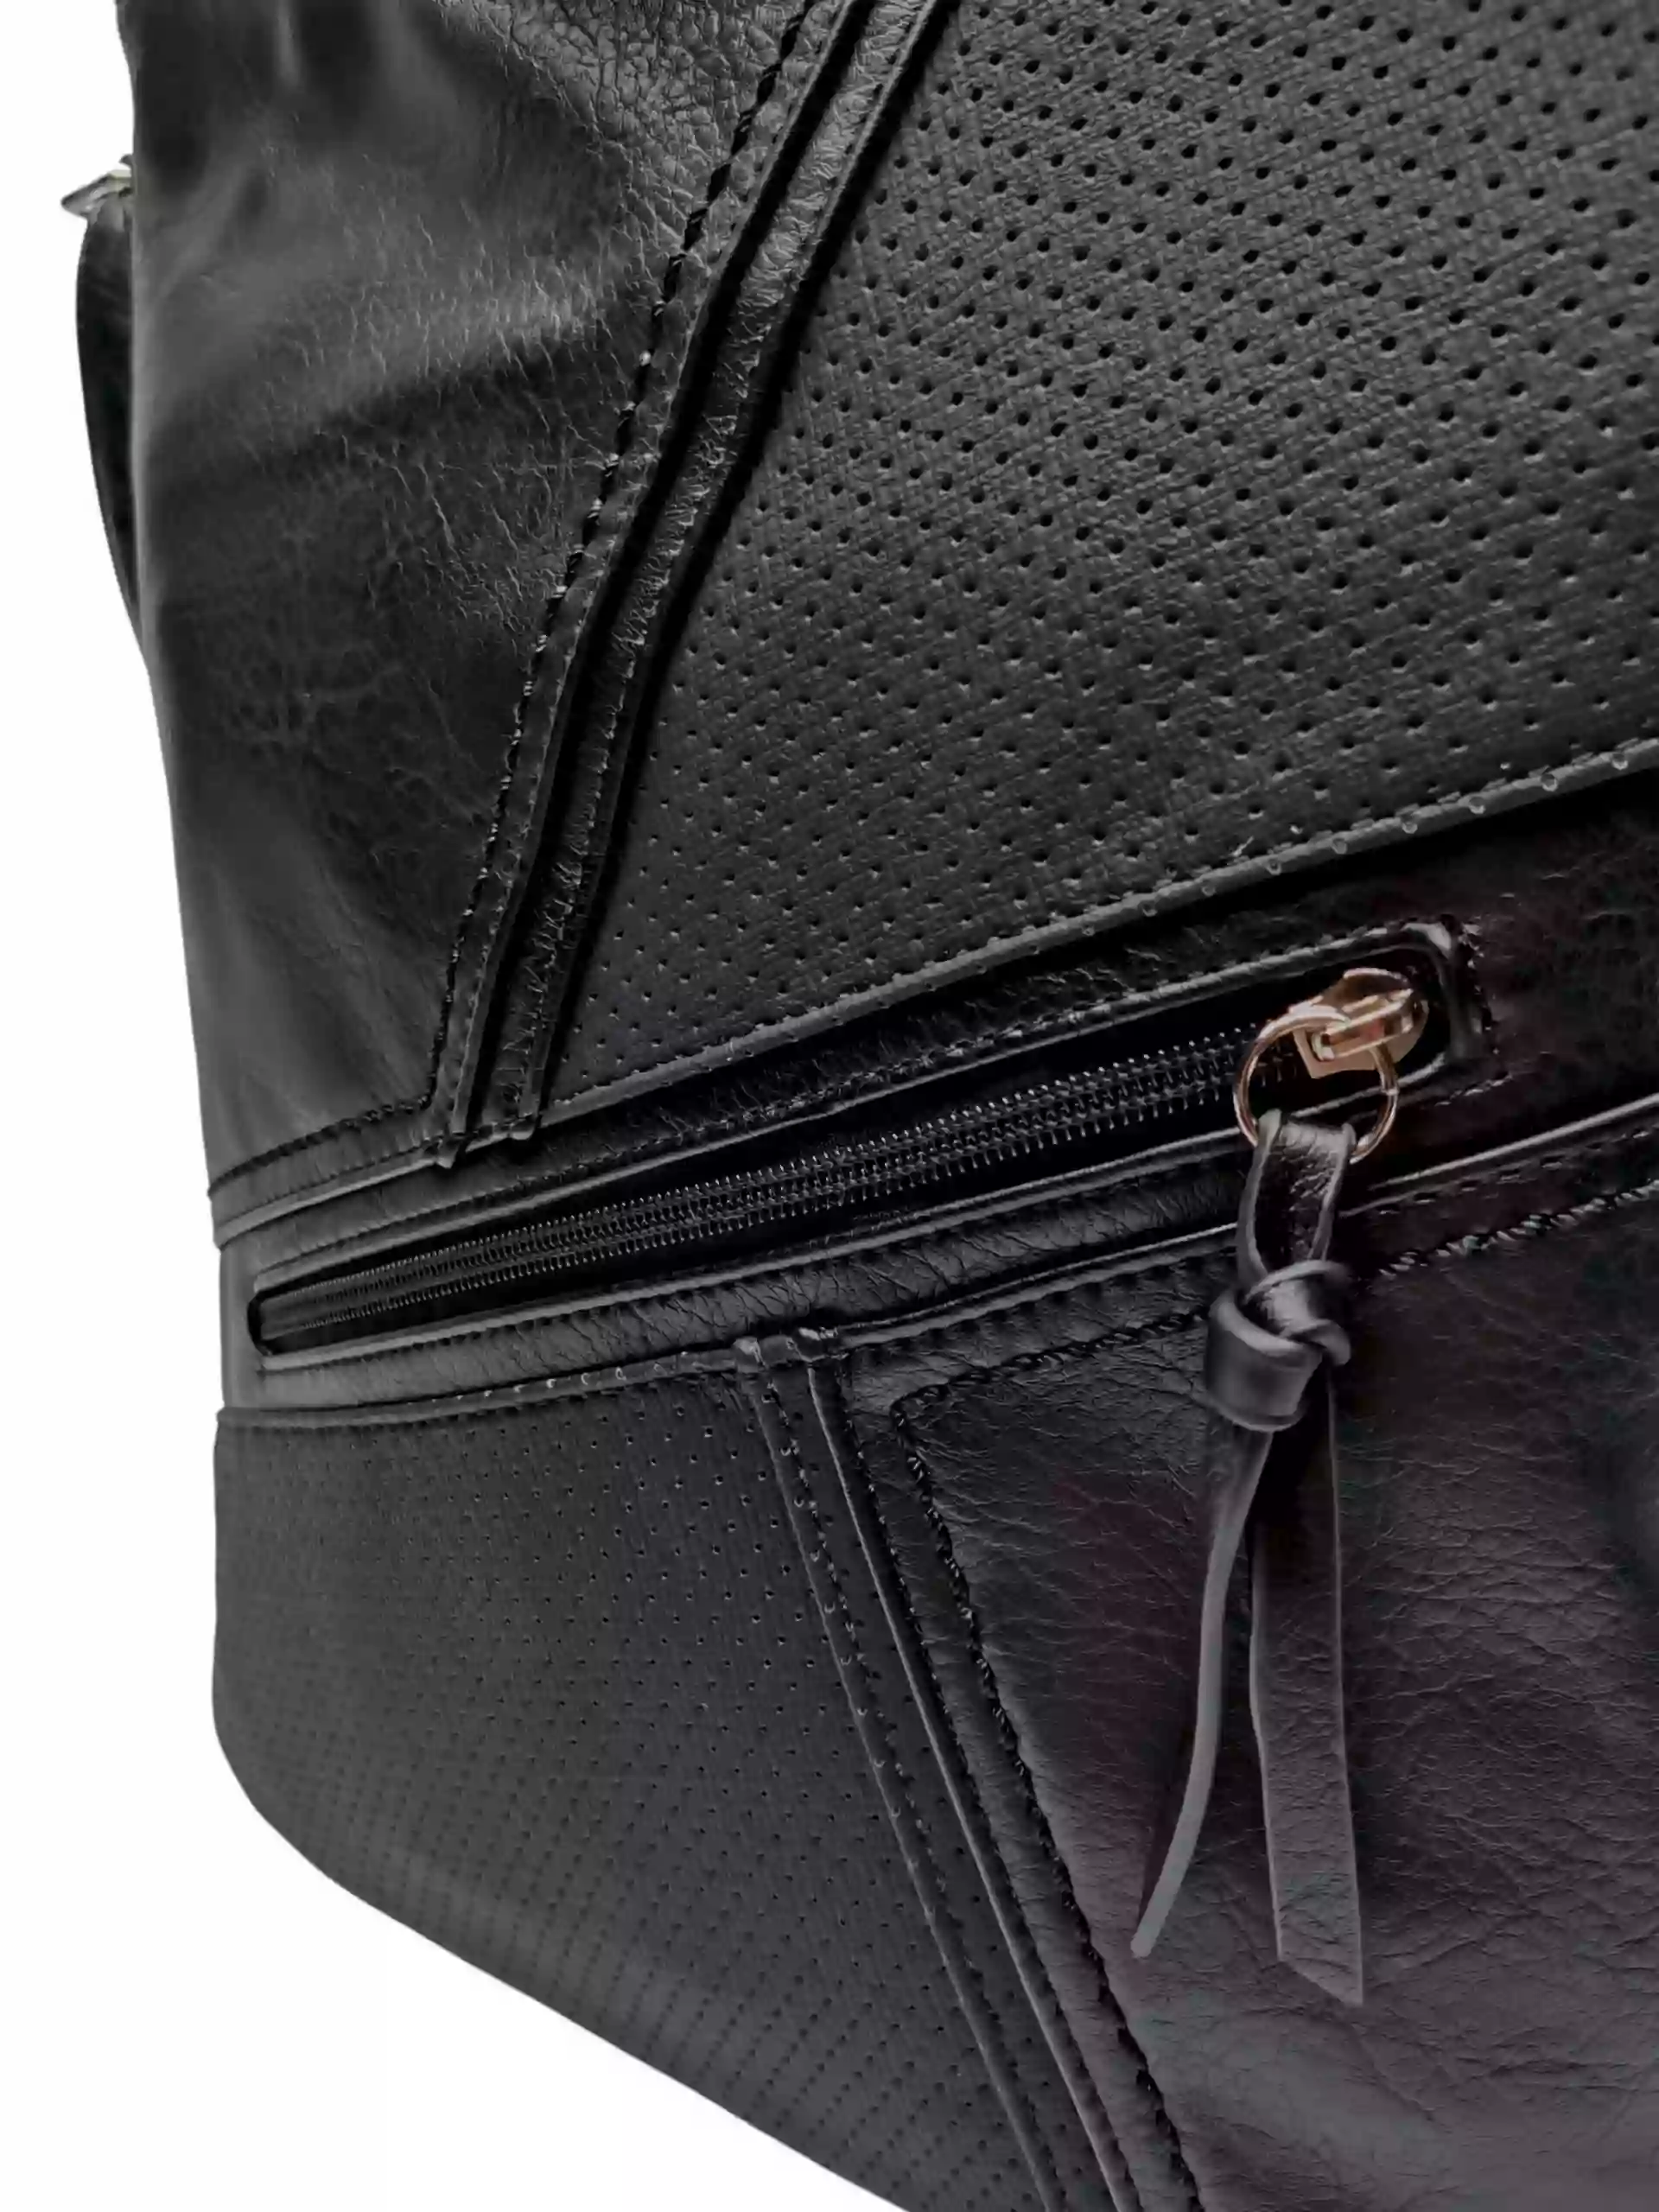 Středně velká crossbody kabelka s líbivou texturou, Tapple, H18064, černá, detail crossbody kabelky